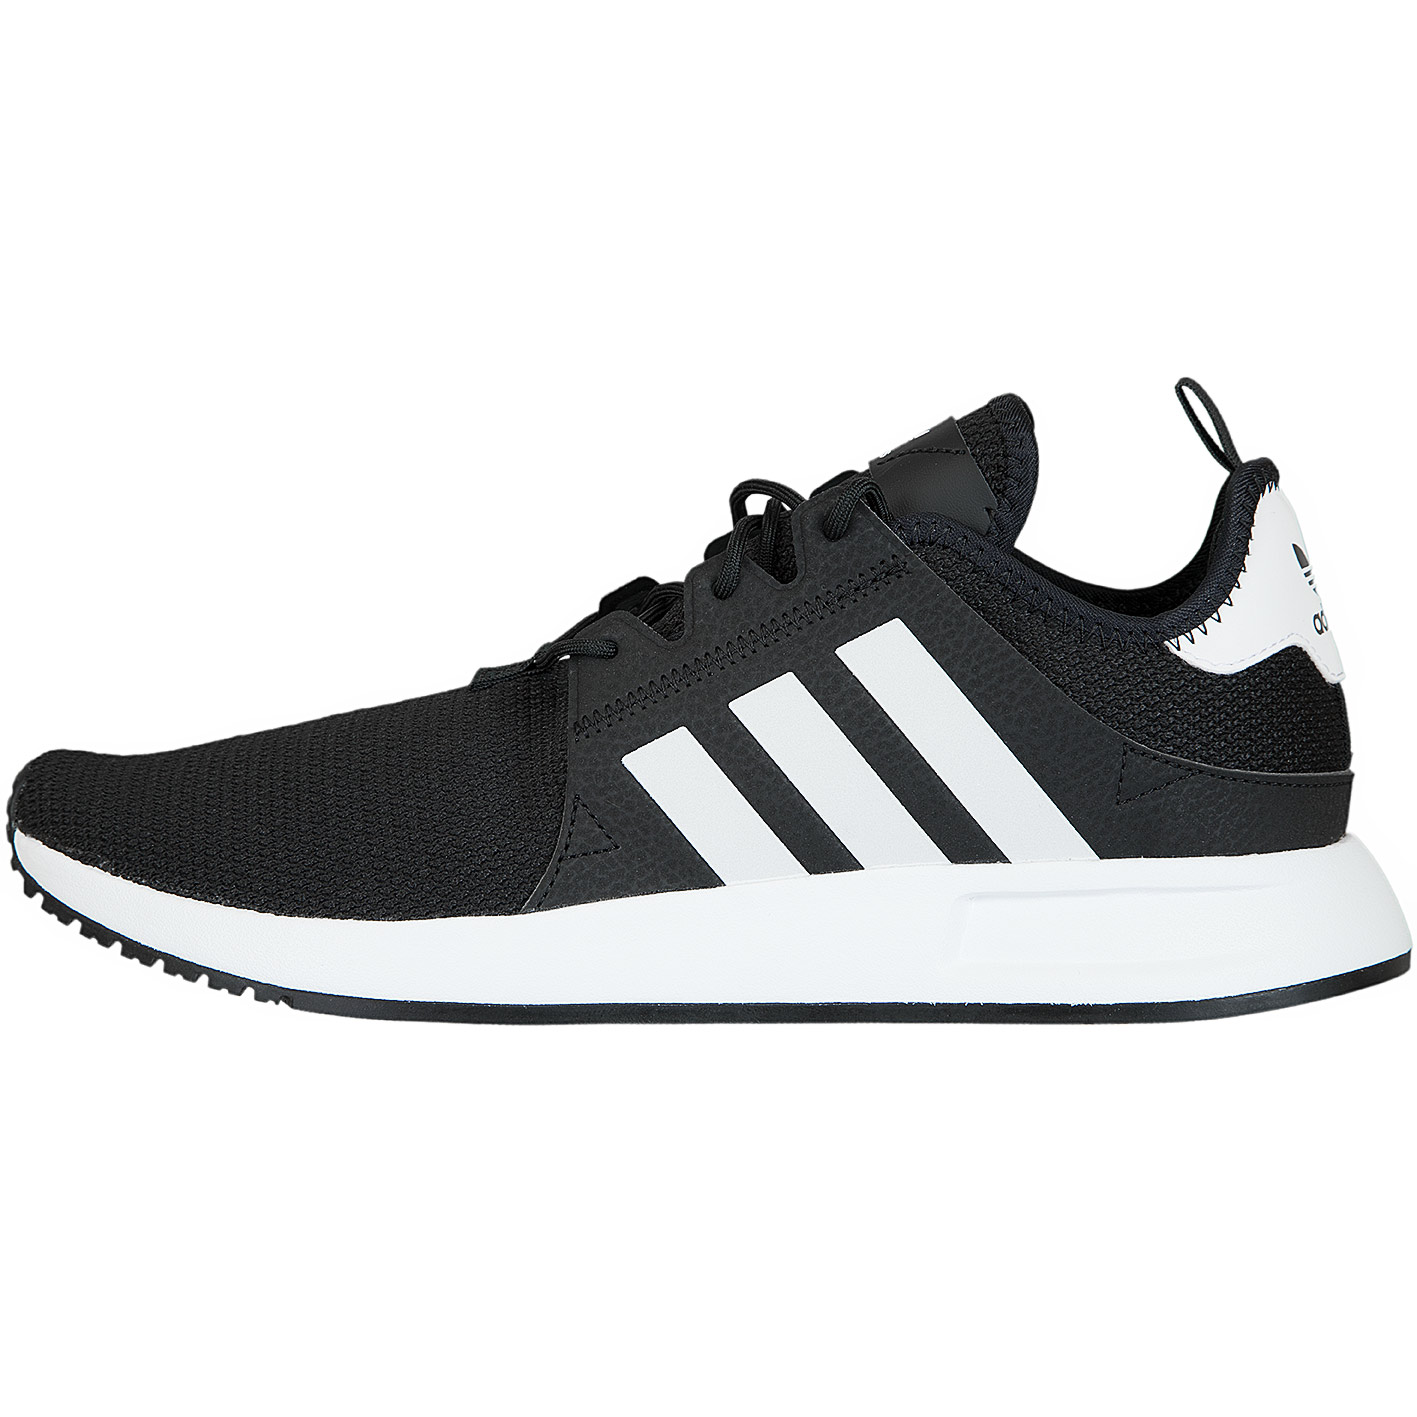 ☆ Adidas Originals Sneaker X PLR schwarz/weiß - hier bestellen!